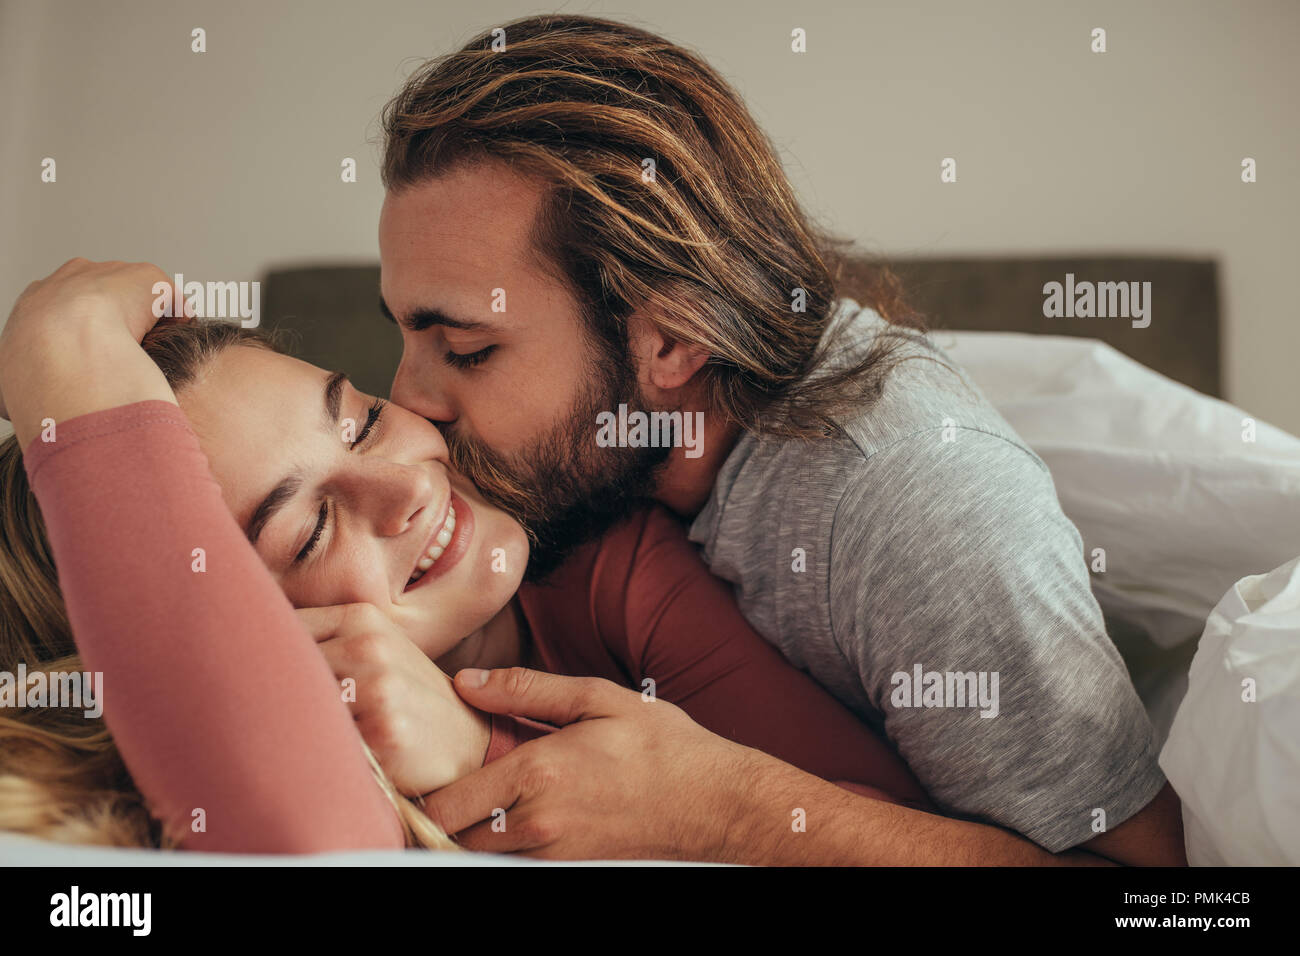 Uomo di baciare la moglie mentre dorme sul letto. Matura in letto ricoperto in coperta con uomo a baciare il suo partner. Foto Stock